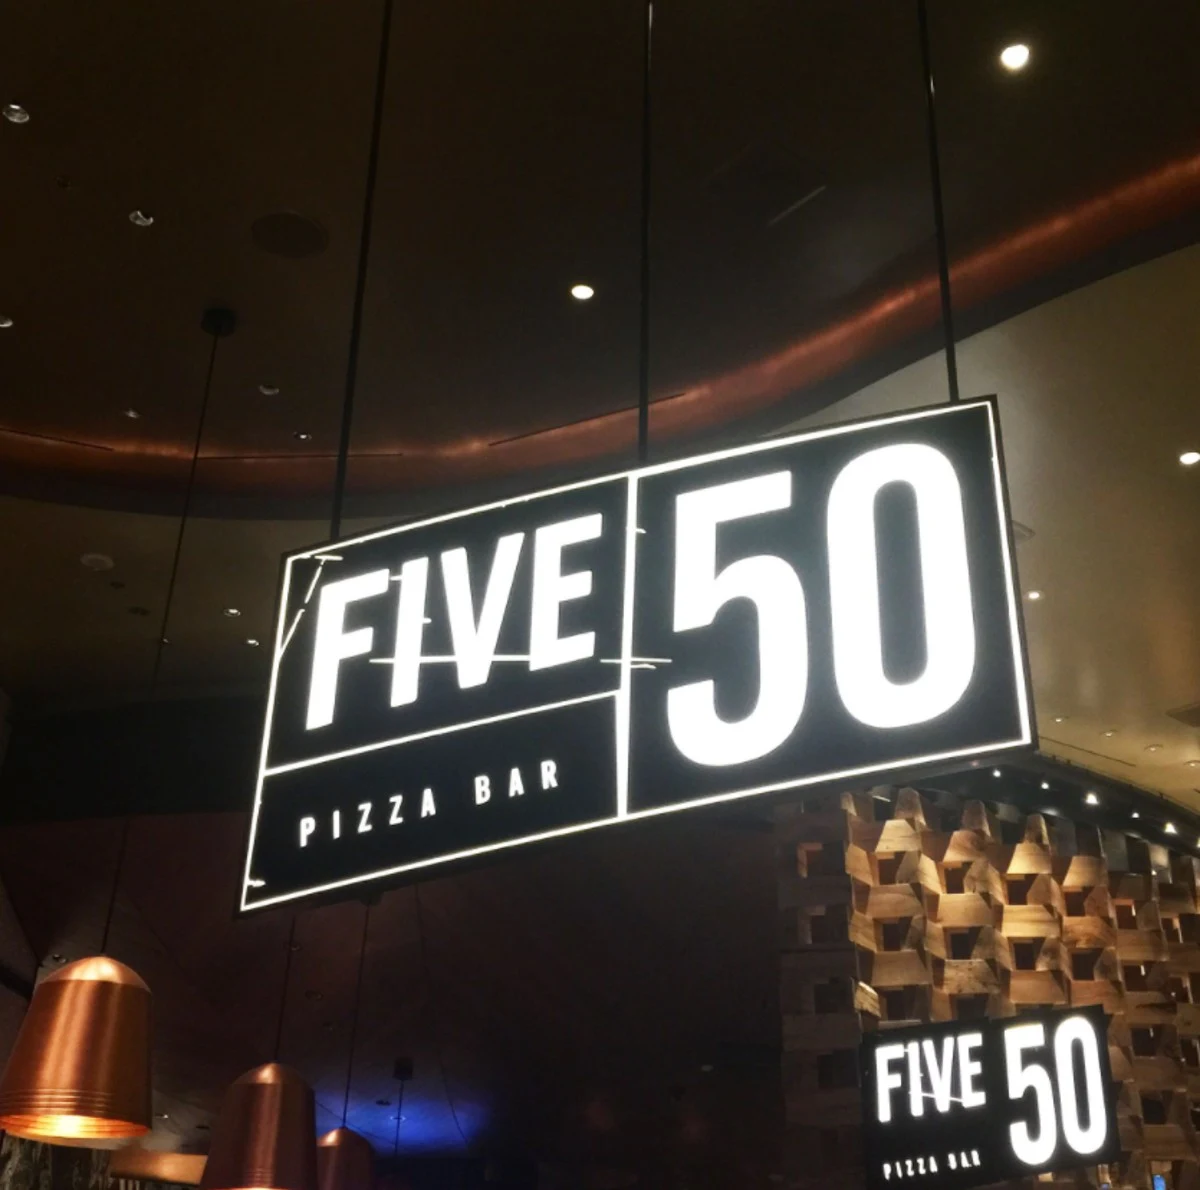 Five 50 Pizza bar